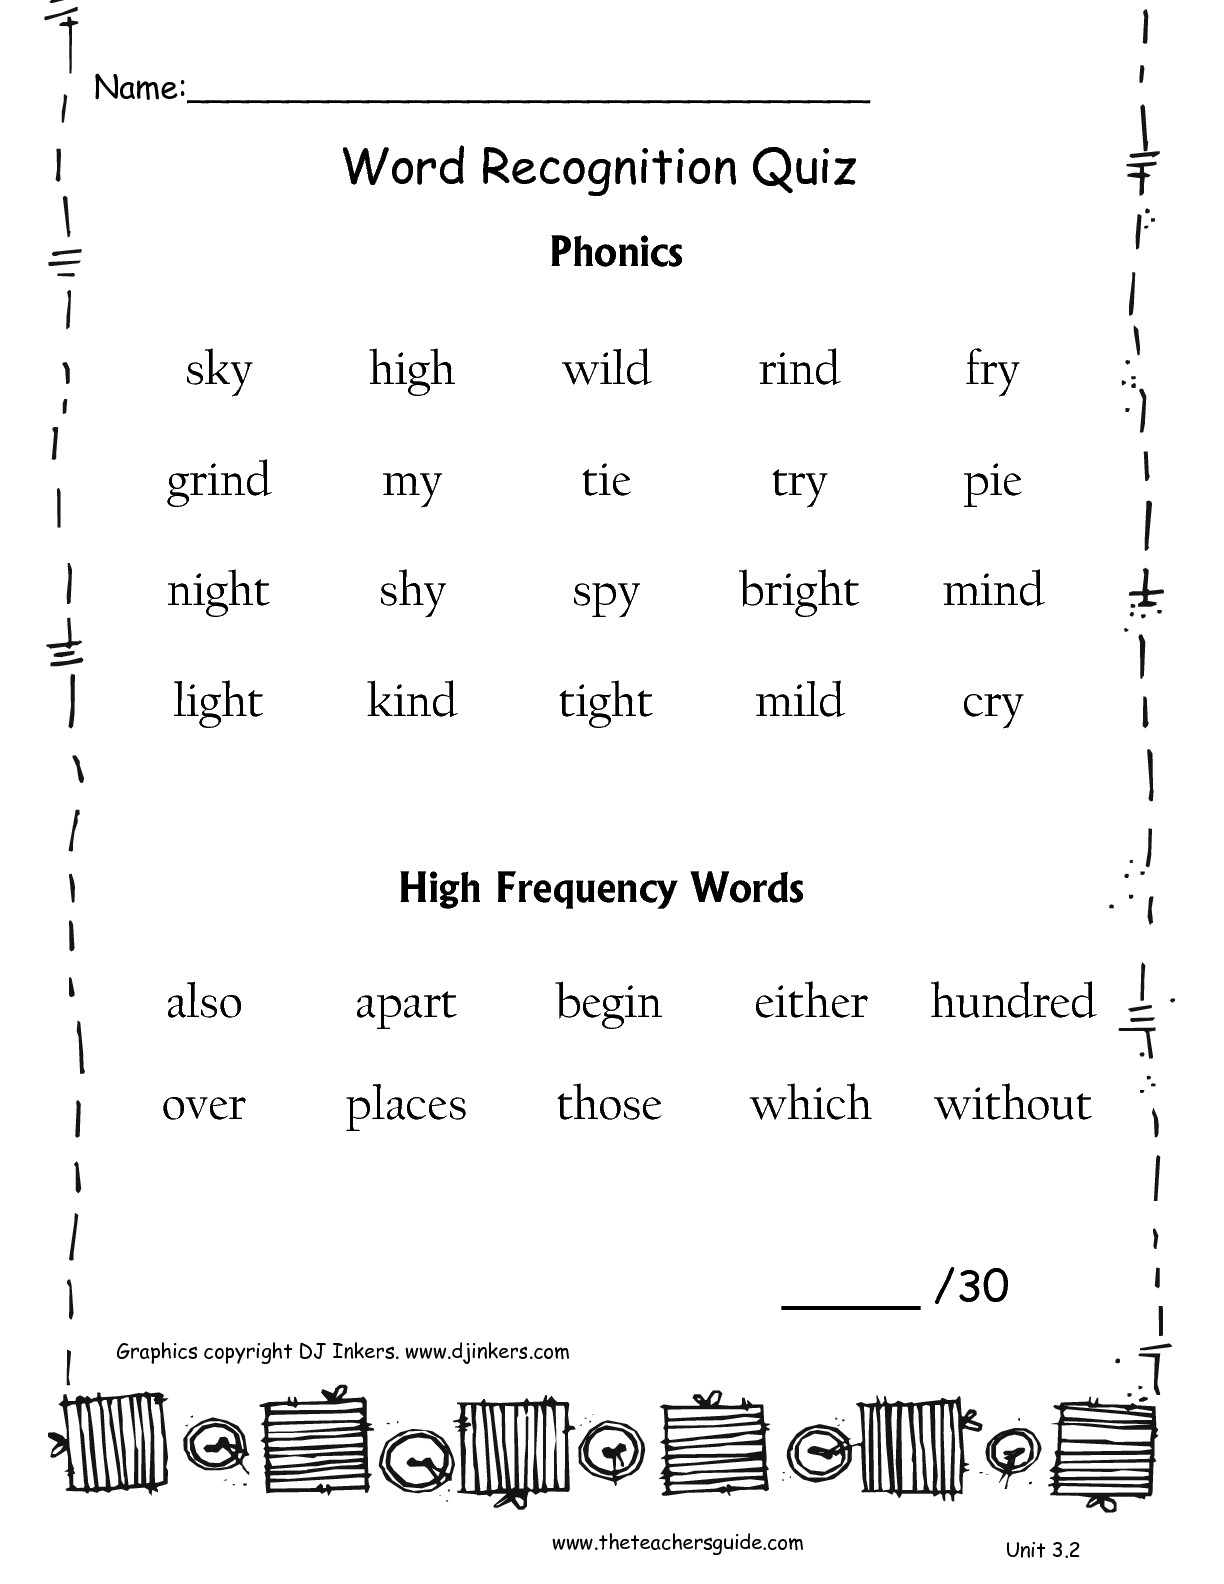 Printables. Free Second Grade Phonics Worksheets. Lemonlilyfestival - Free Printable Phonics Worksheets For Second Grade